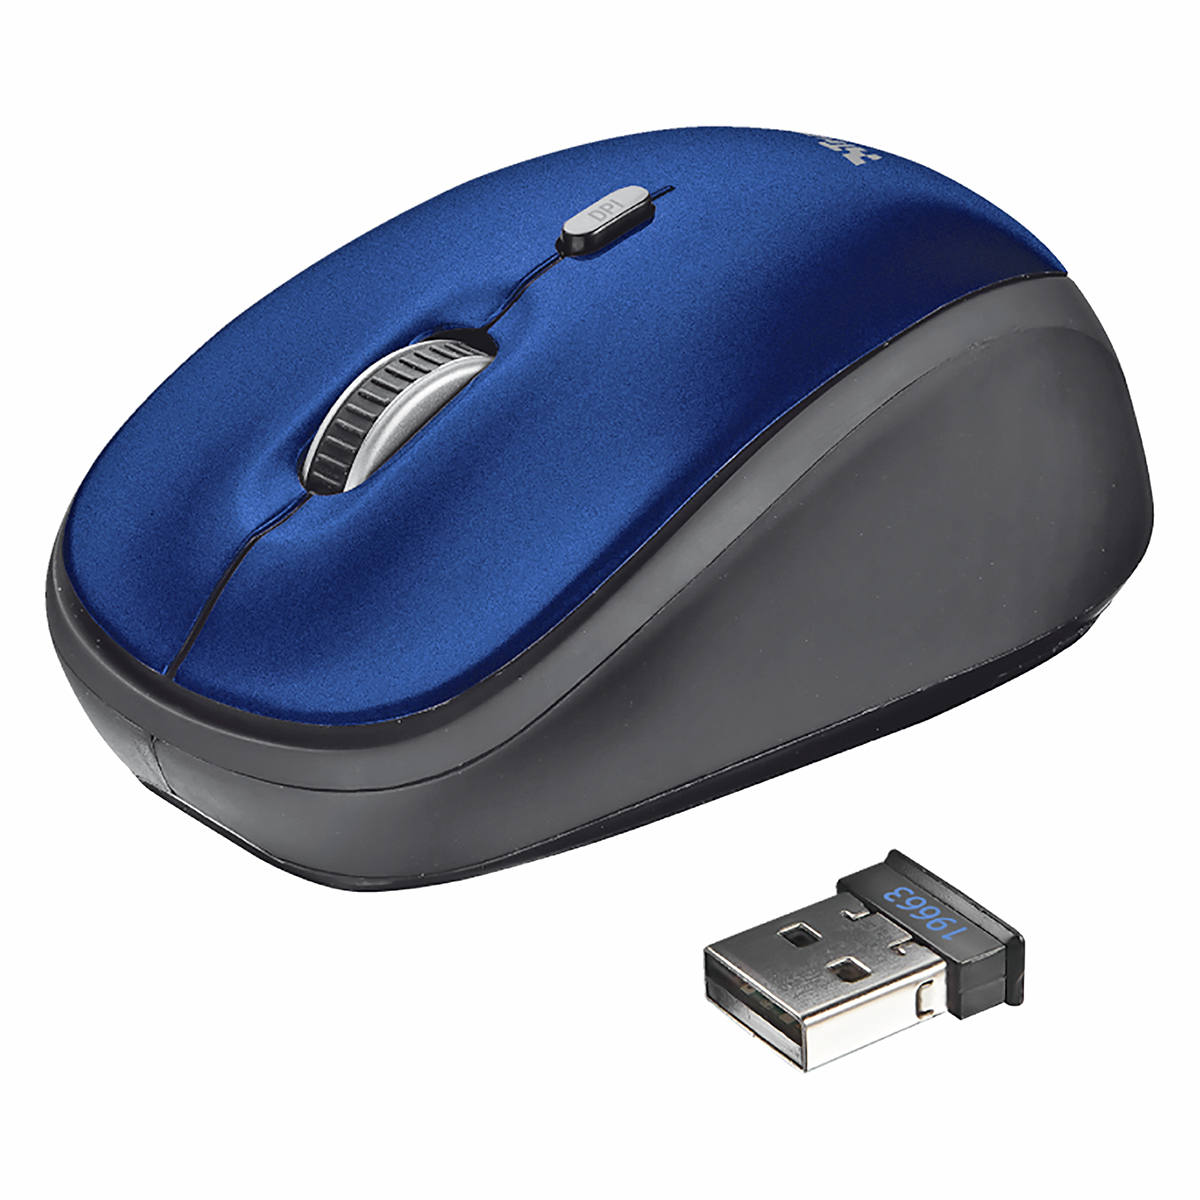 Mouse Wireless Compacto com Botão Seletor de DPI Micro Receptor USB Acompanha Pilha Trust Yvi Blue